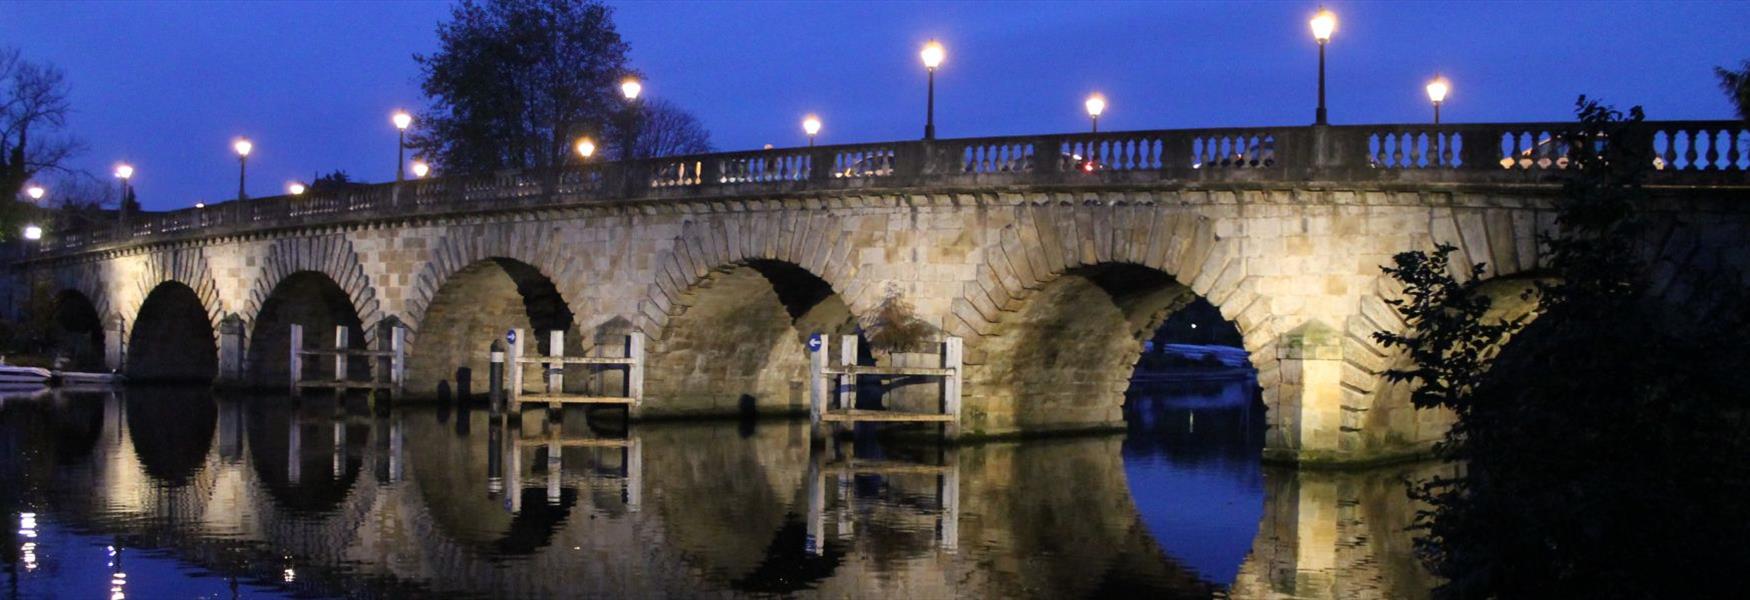 Maidenhead Bridge at Night